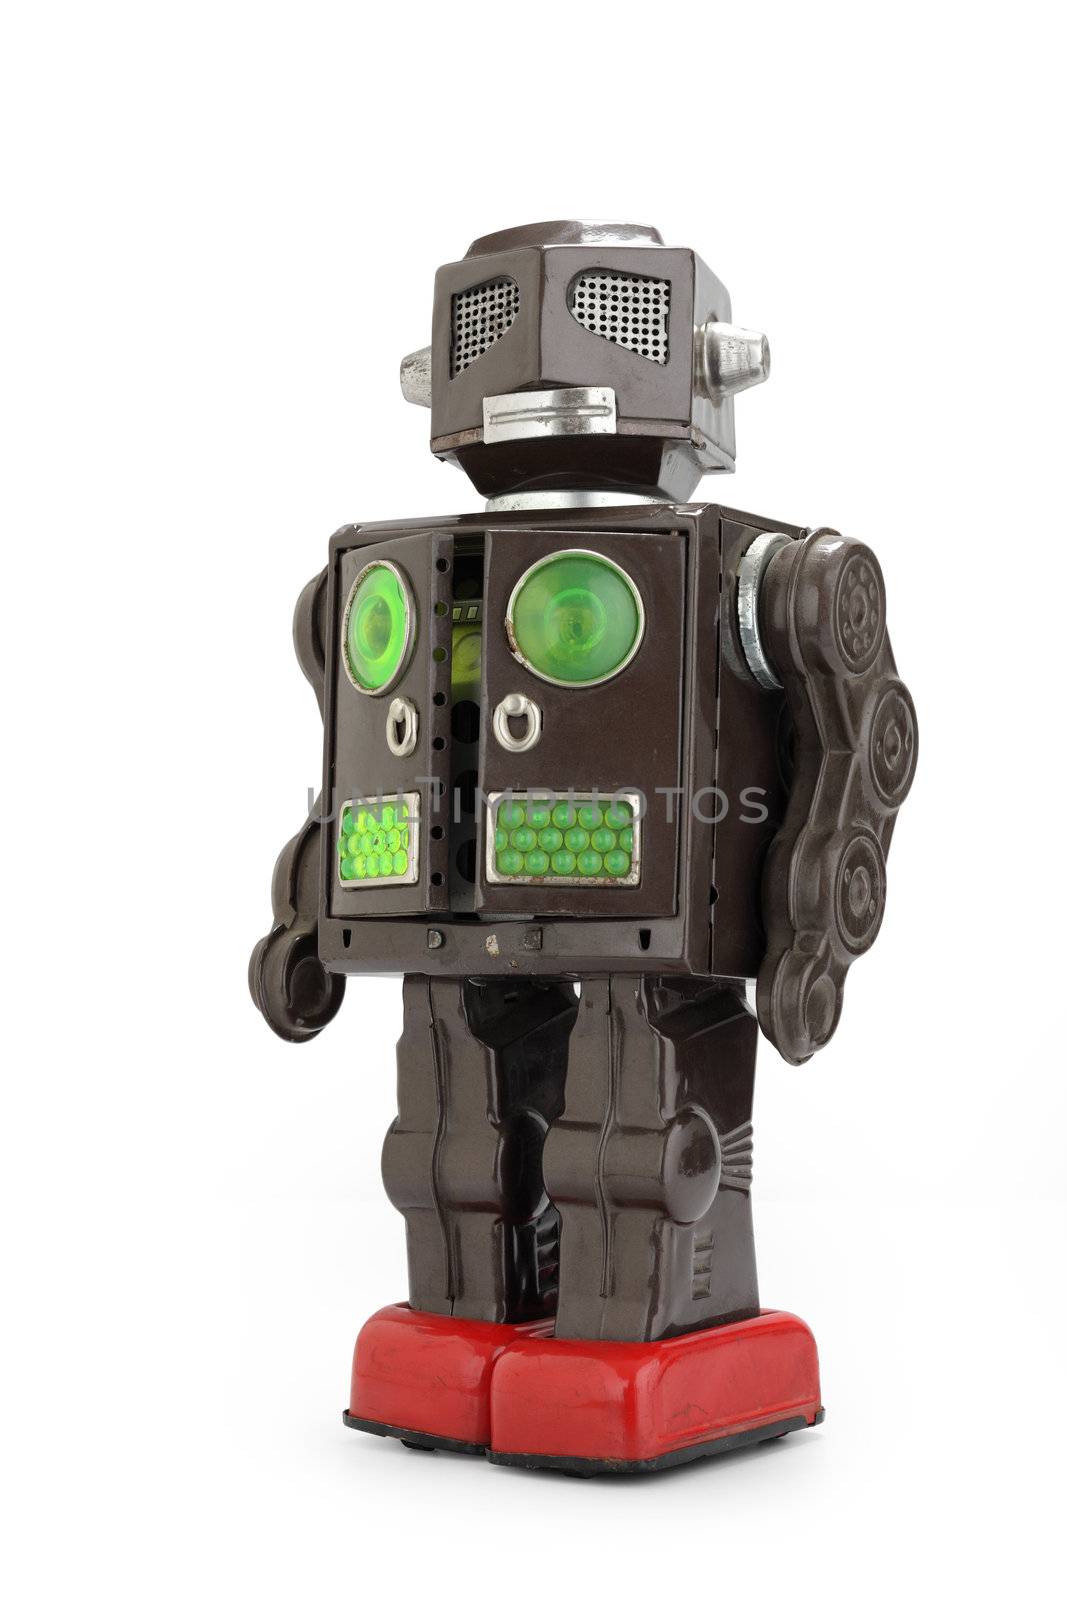  retro tin robot toy by stokkete